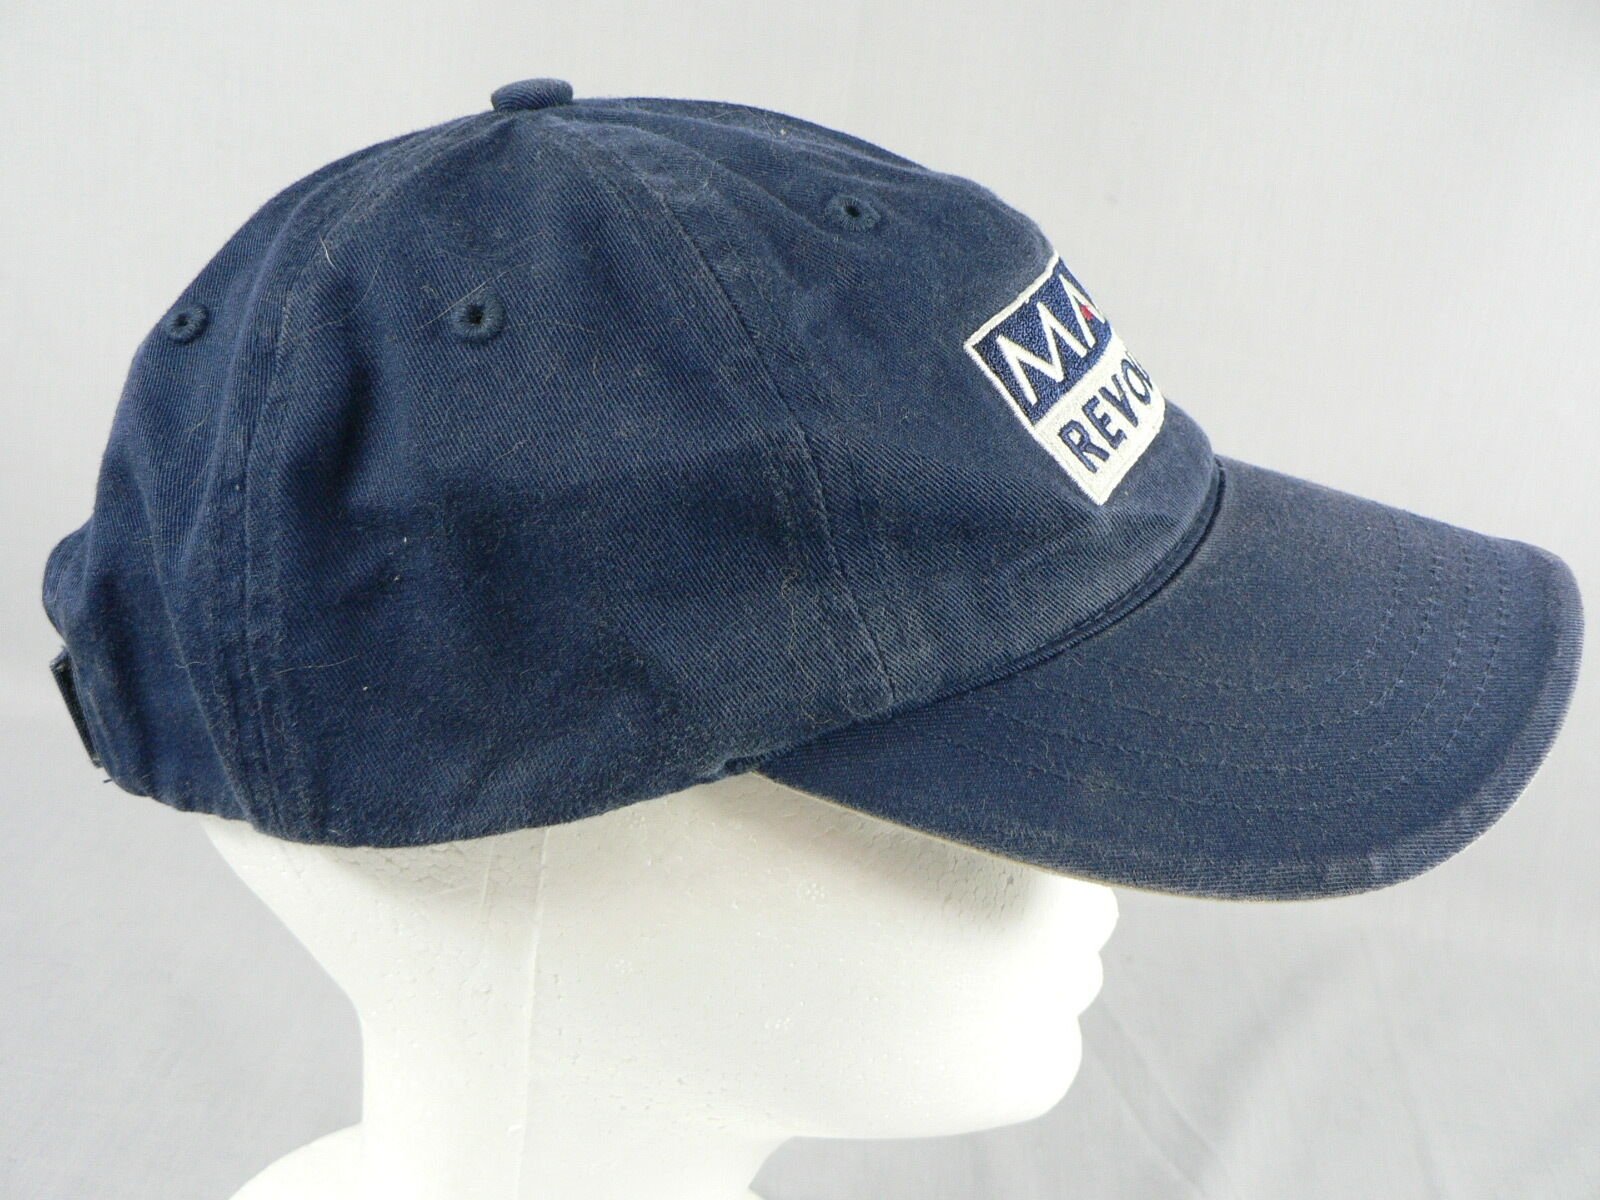 Maxfli Revolution Golf Baseball Cap Hat Adj. OSFM hook & loop strap